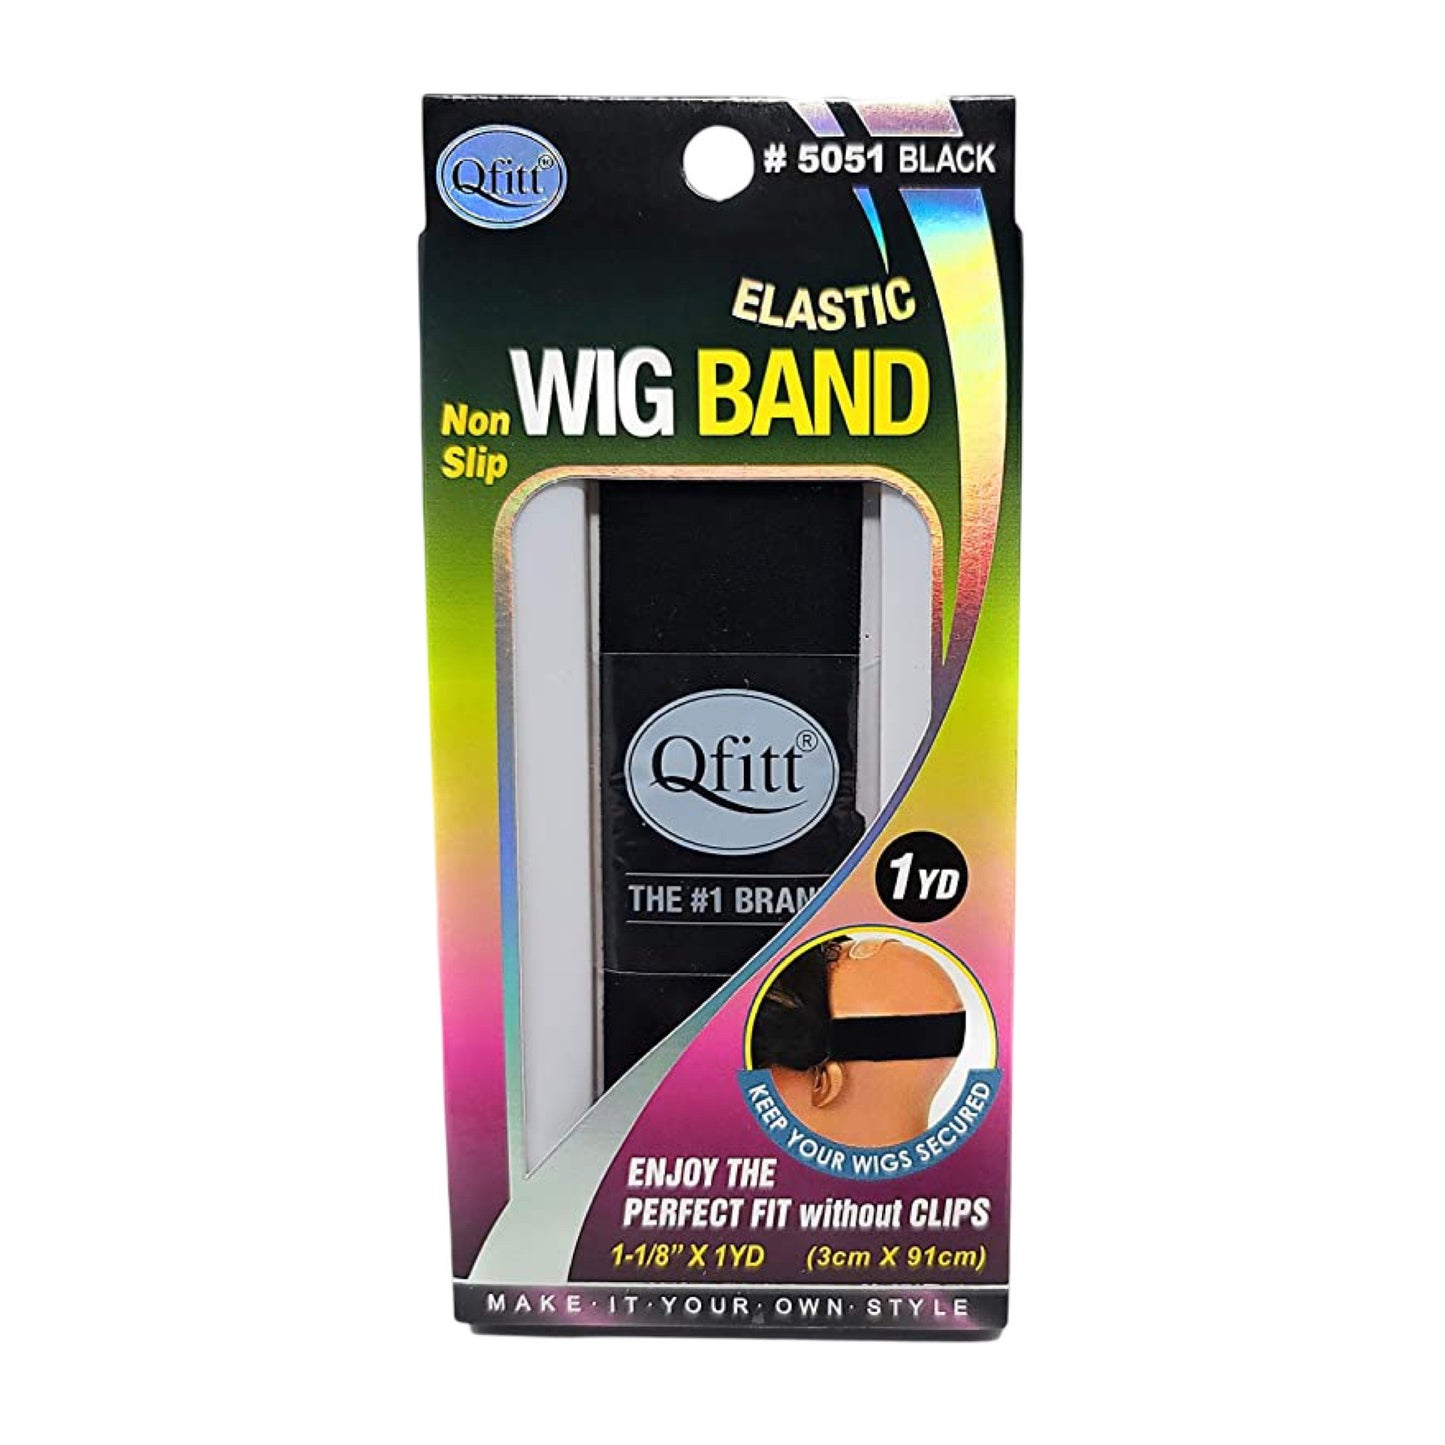 Qfitt Elastic Wig Band | 5051 Black